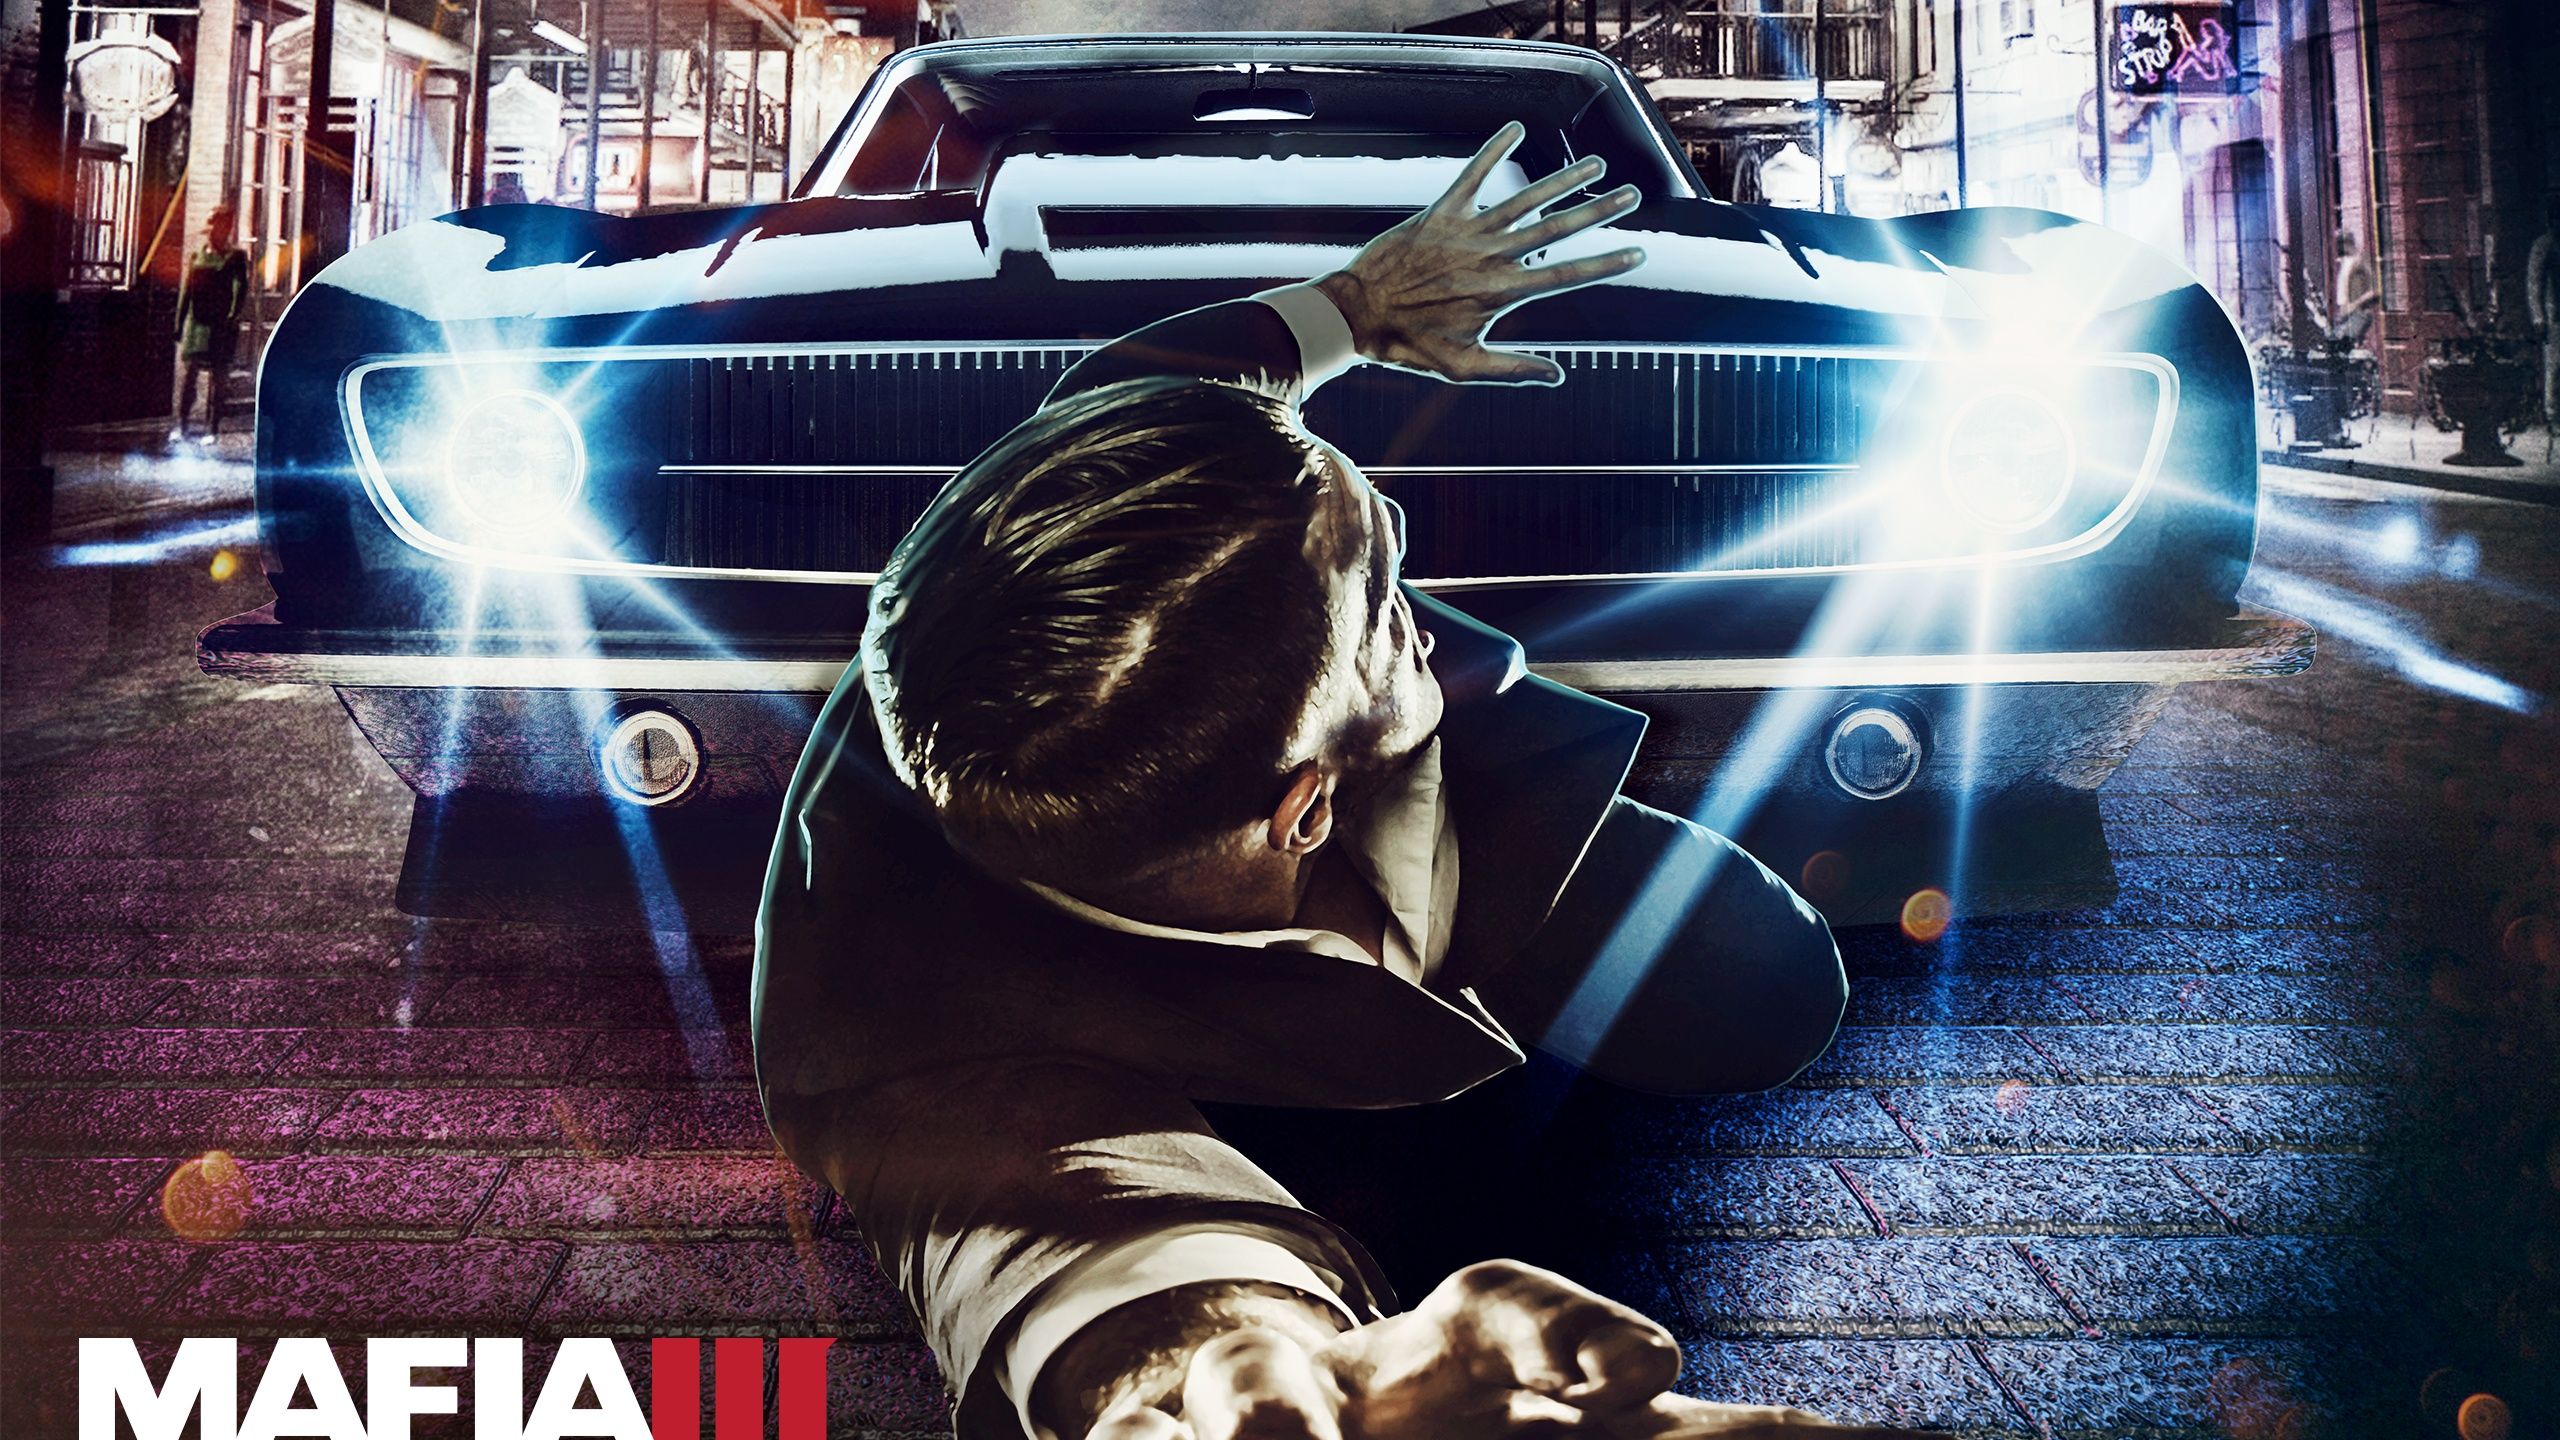 Mafia III Mafia Car Attack Wallpaper